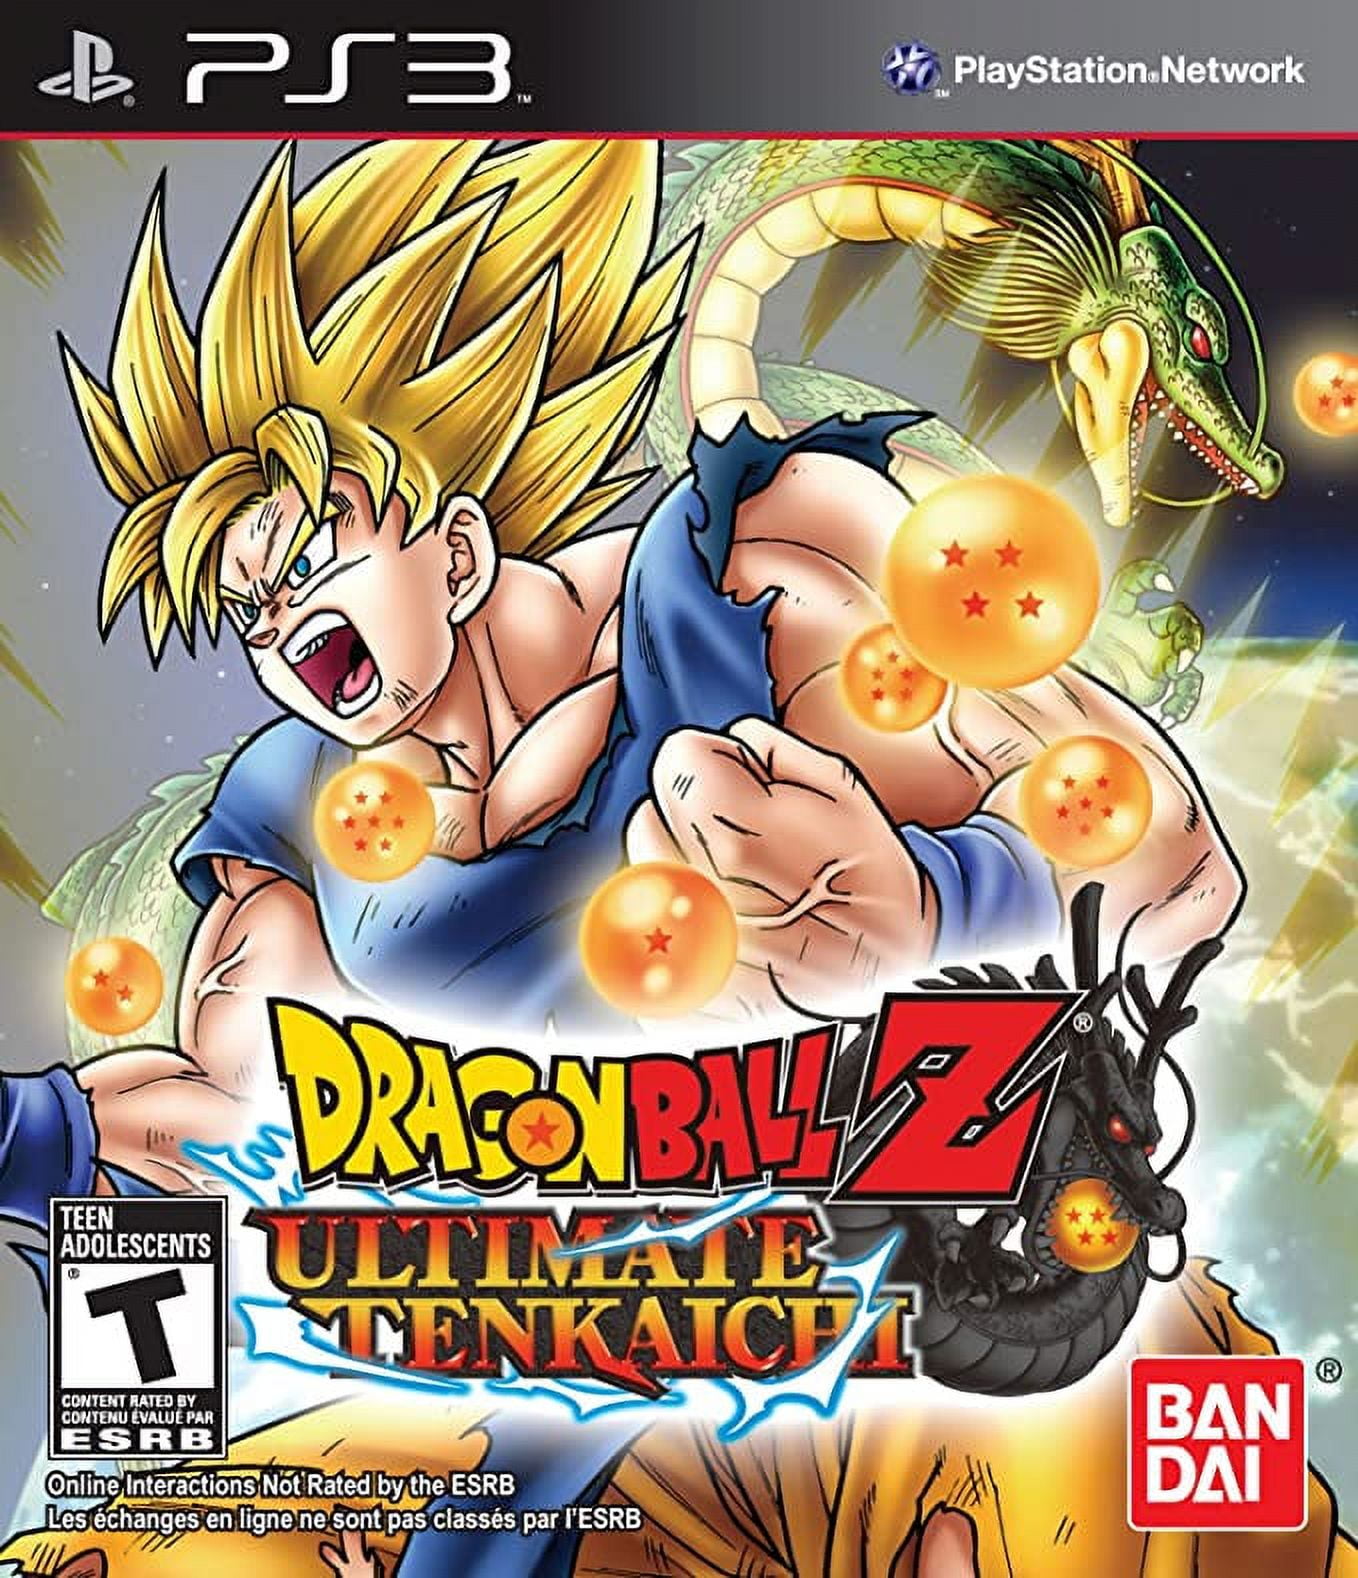 Petición · Remake de Dragon Ball Z: budokai tenkaichi 3 para consolas de  NewGen ·